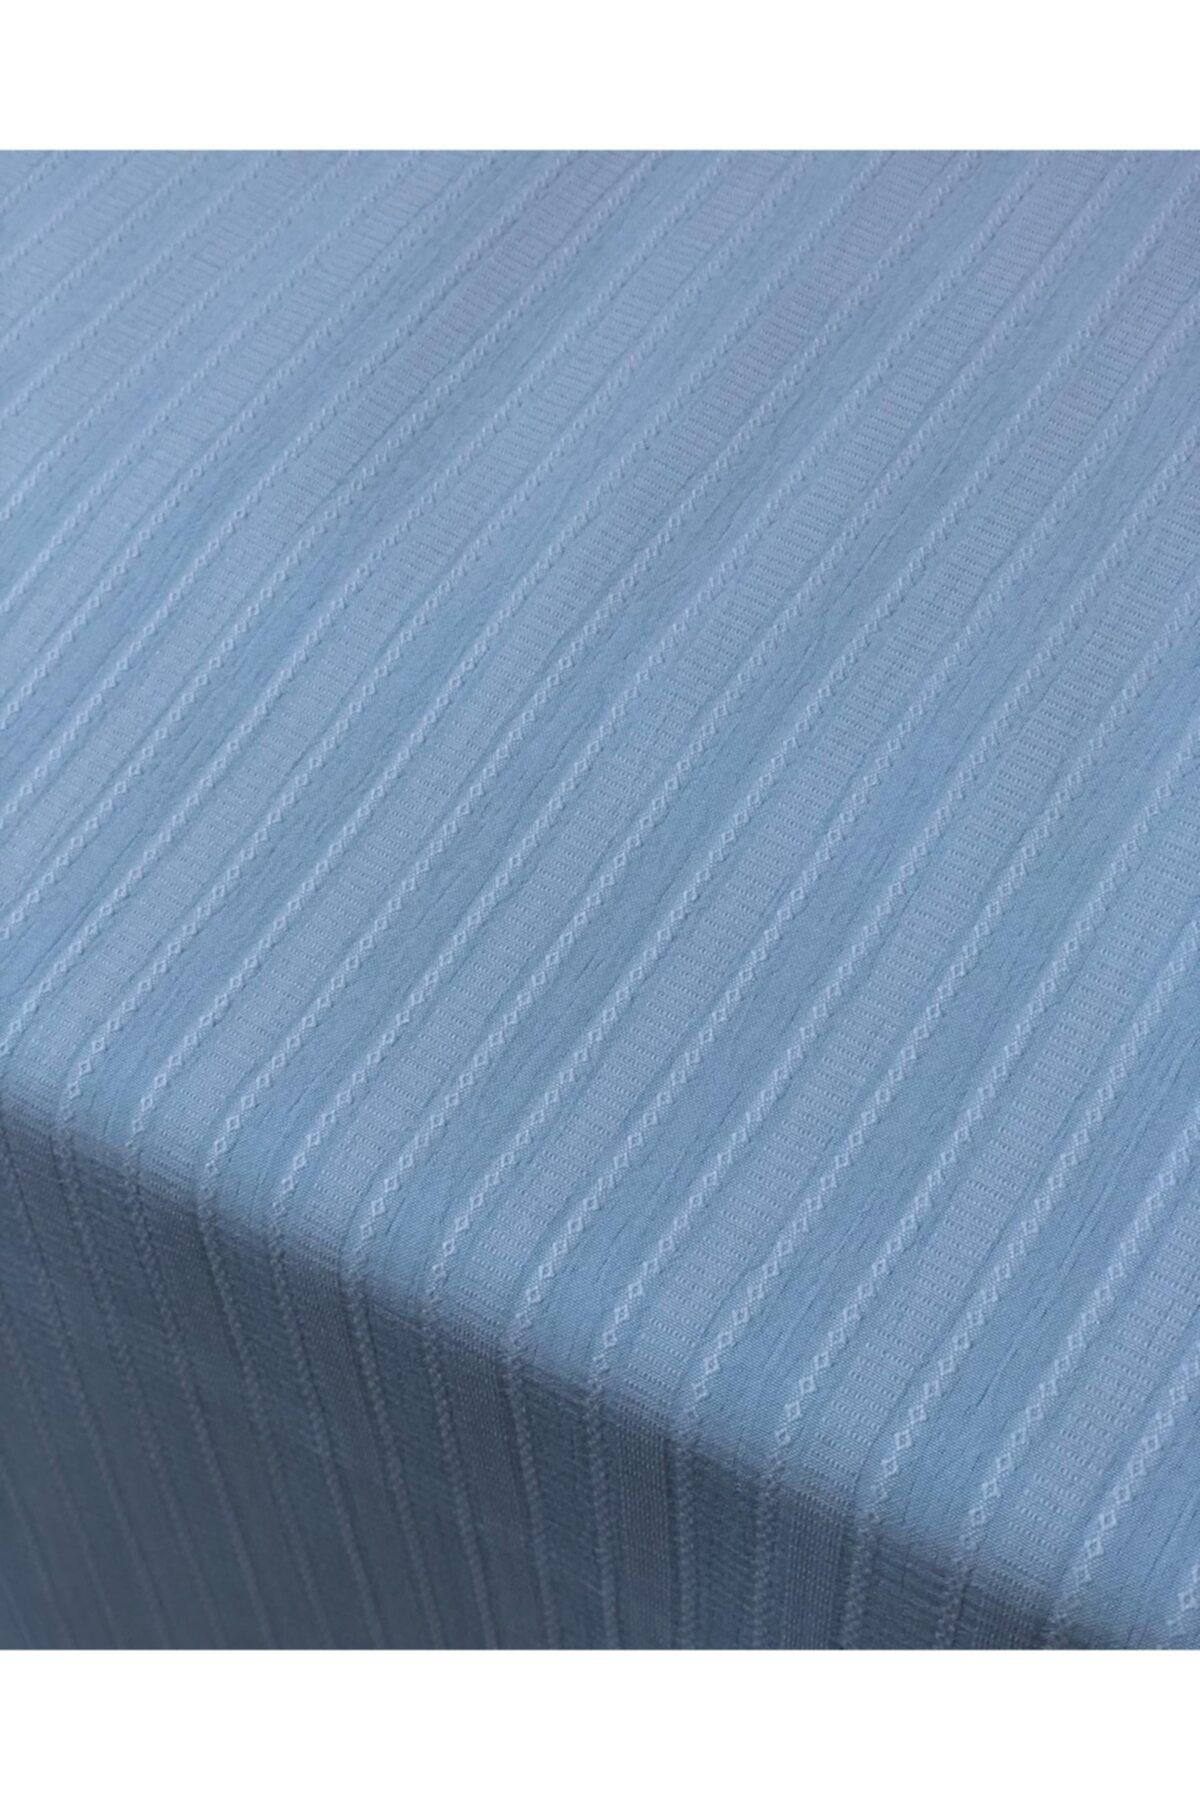 Fırat Unisex Elbiselik Ve Gömleklik Kumaş Turkuaz Mavi